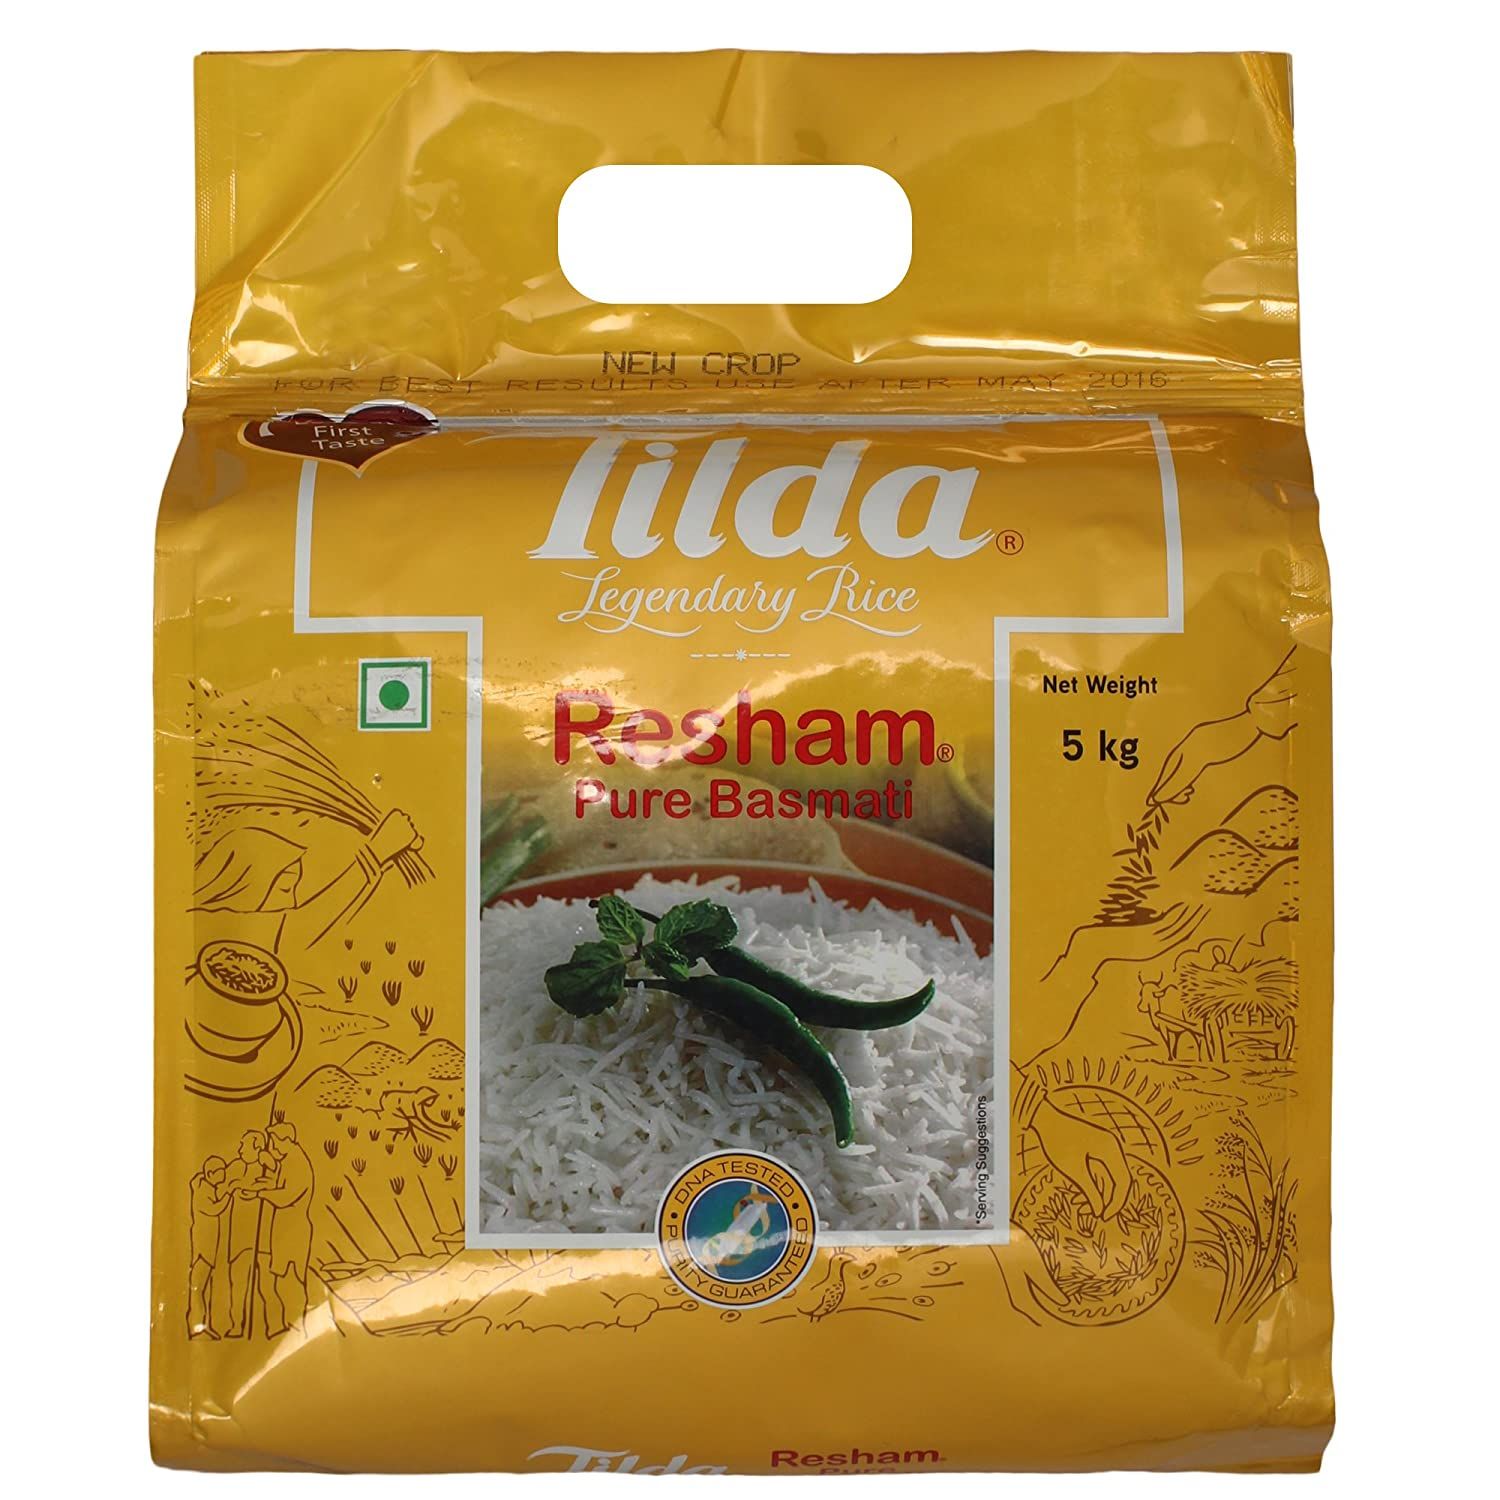 Tilda Resham Basmati Rice Image